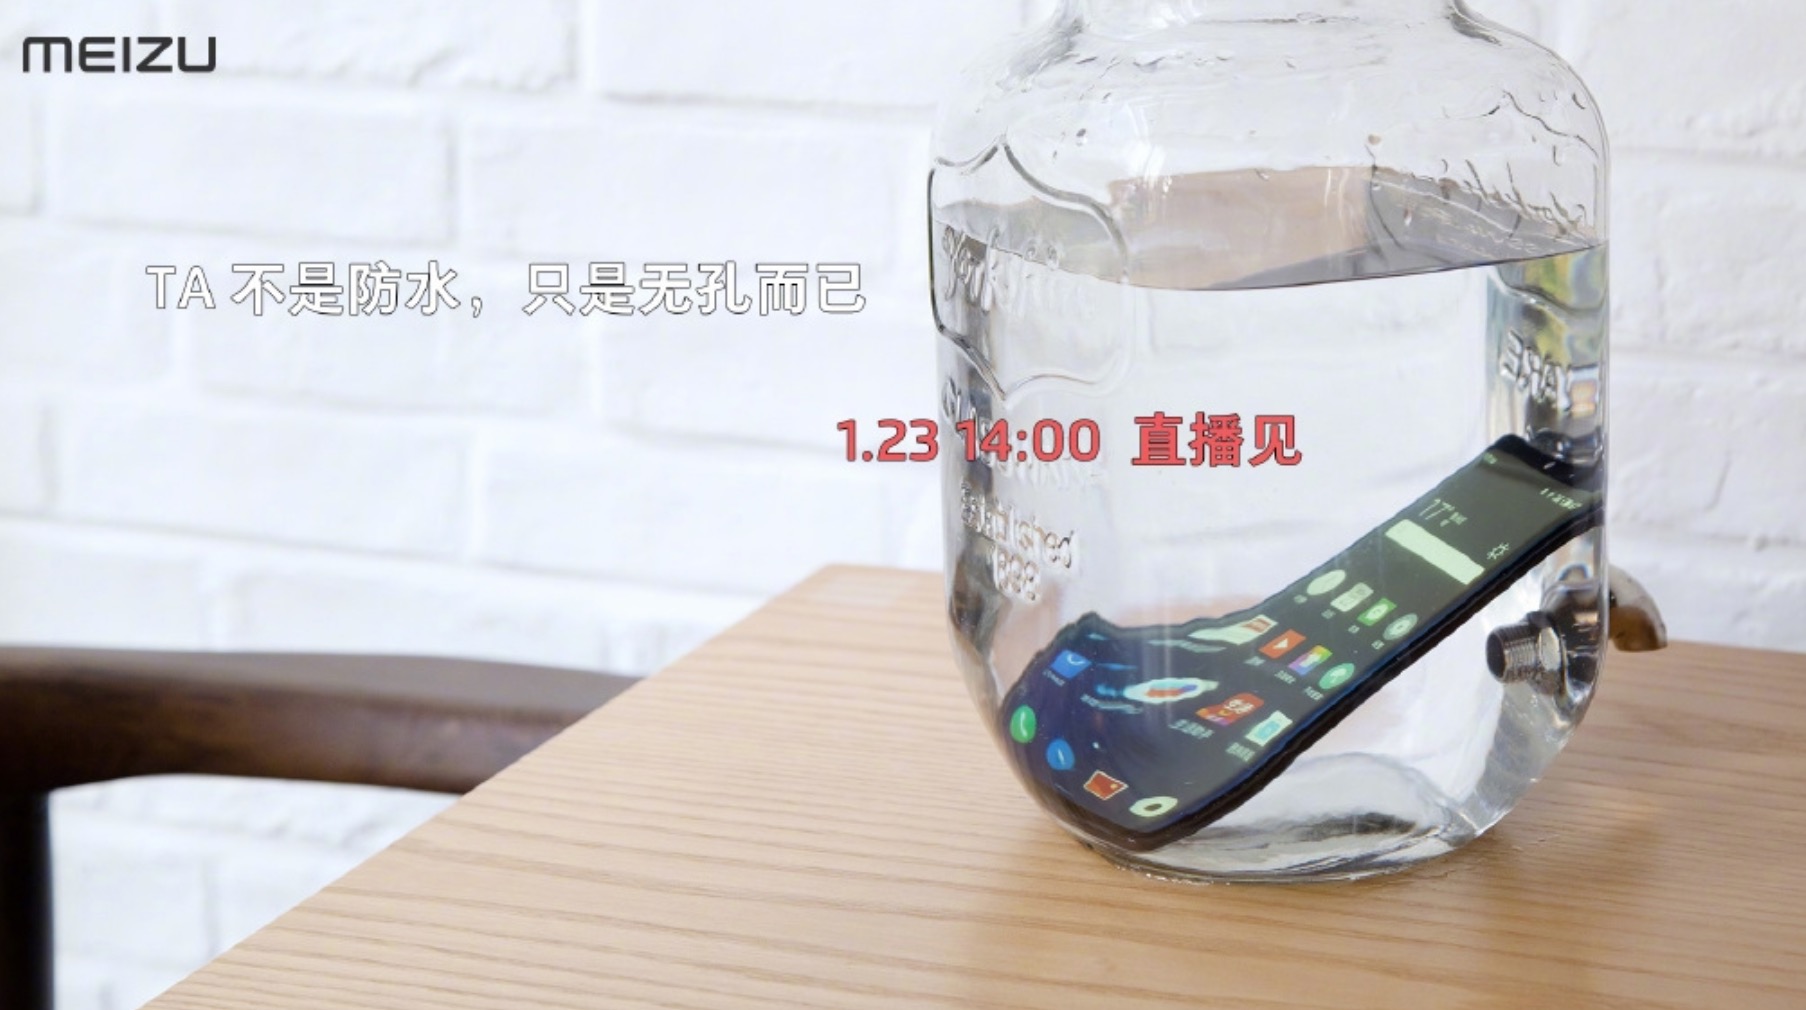 Meizu Zero smartphone
không lỗ sạc, không lỗ loa, không khe SIM, không phím vật lý
đầu tiên trên thế giới